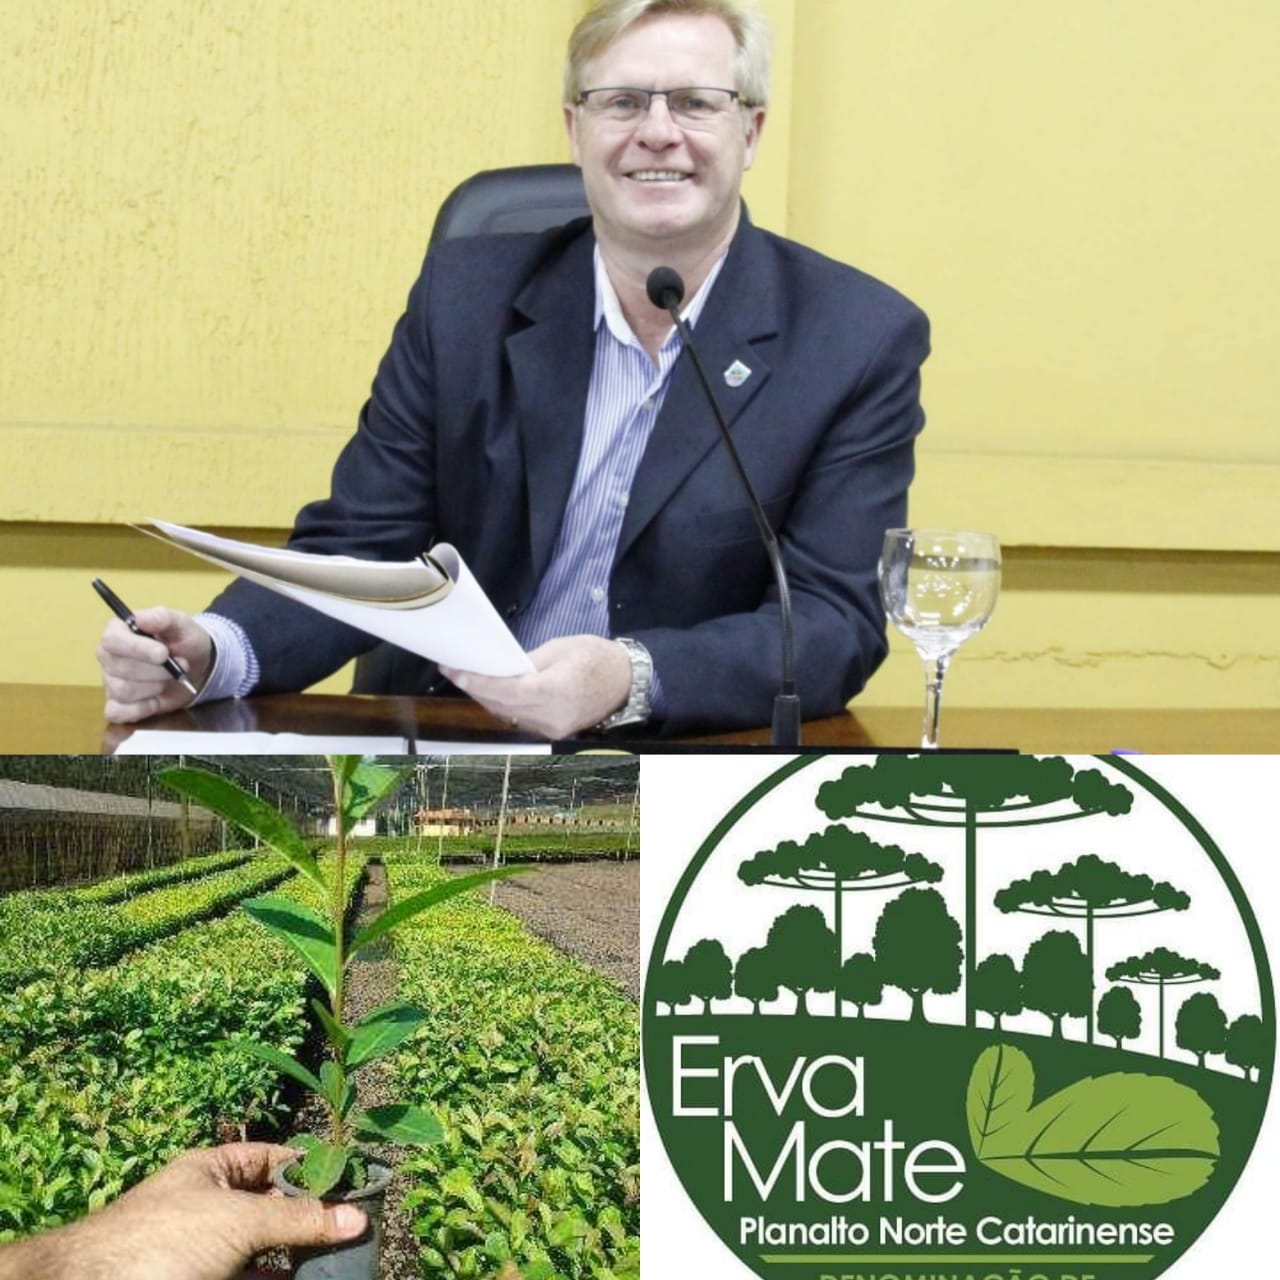 Vereador Coronel Mário solicitou programa para fomentar o plantio da erva mate no município